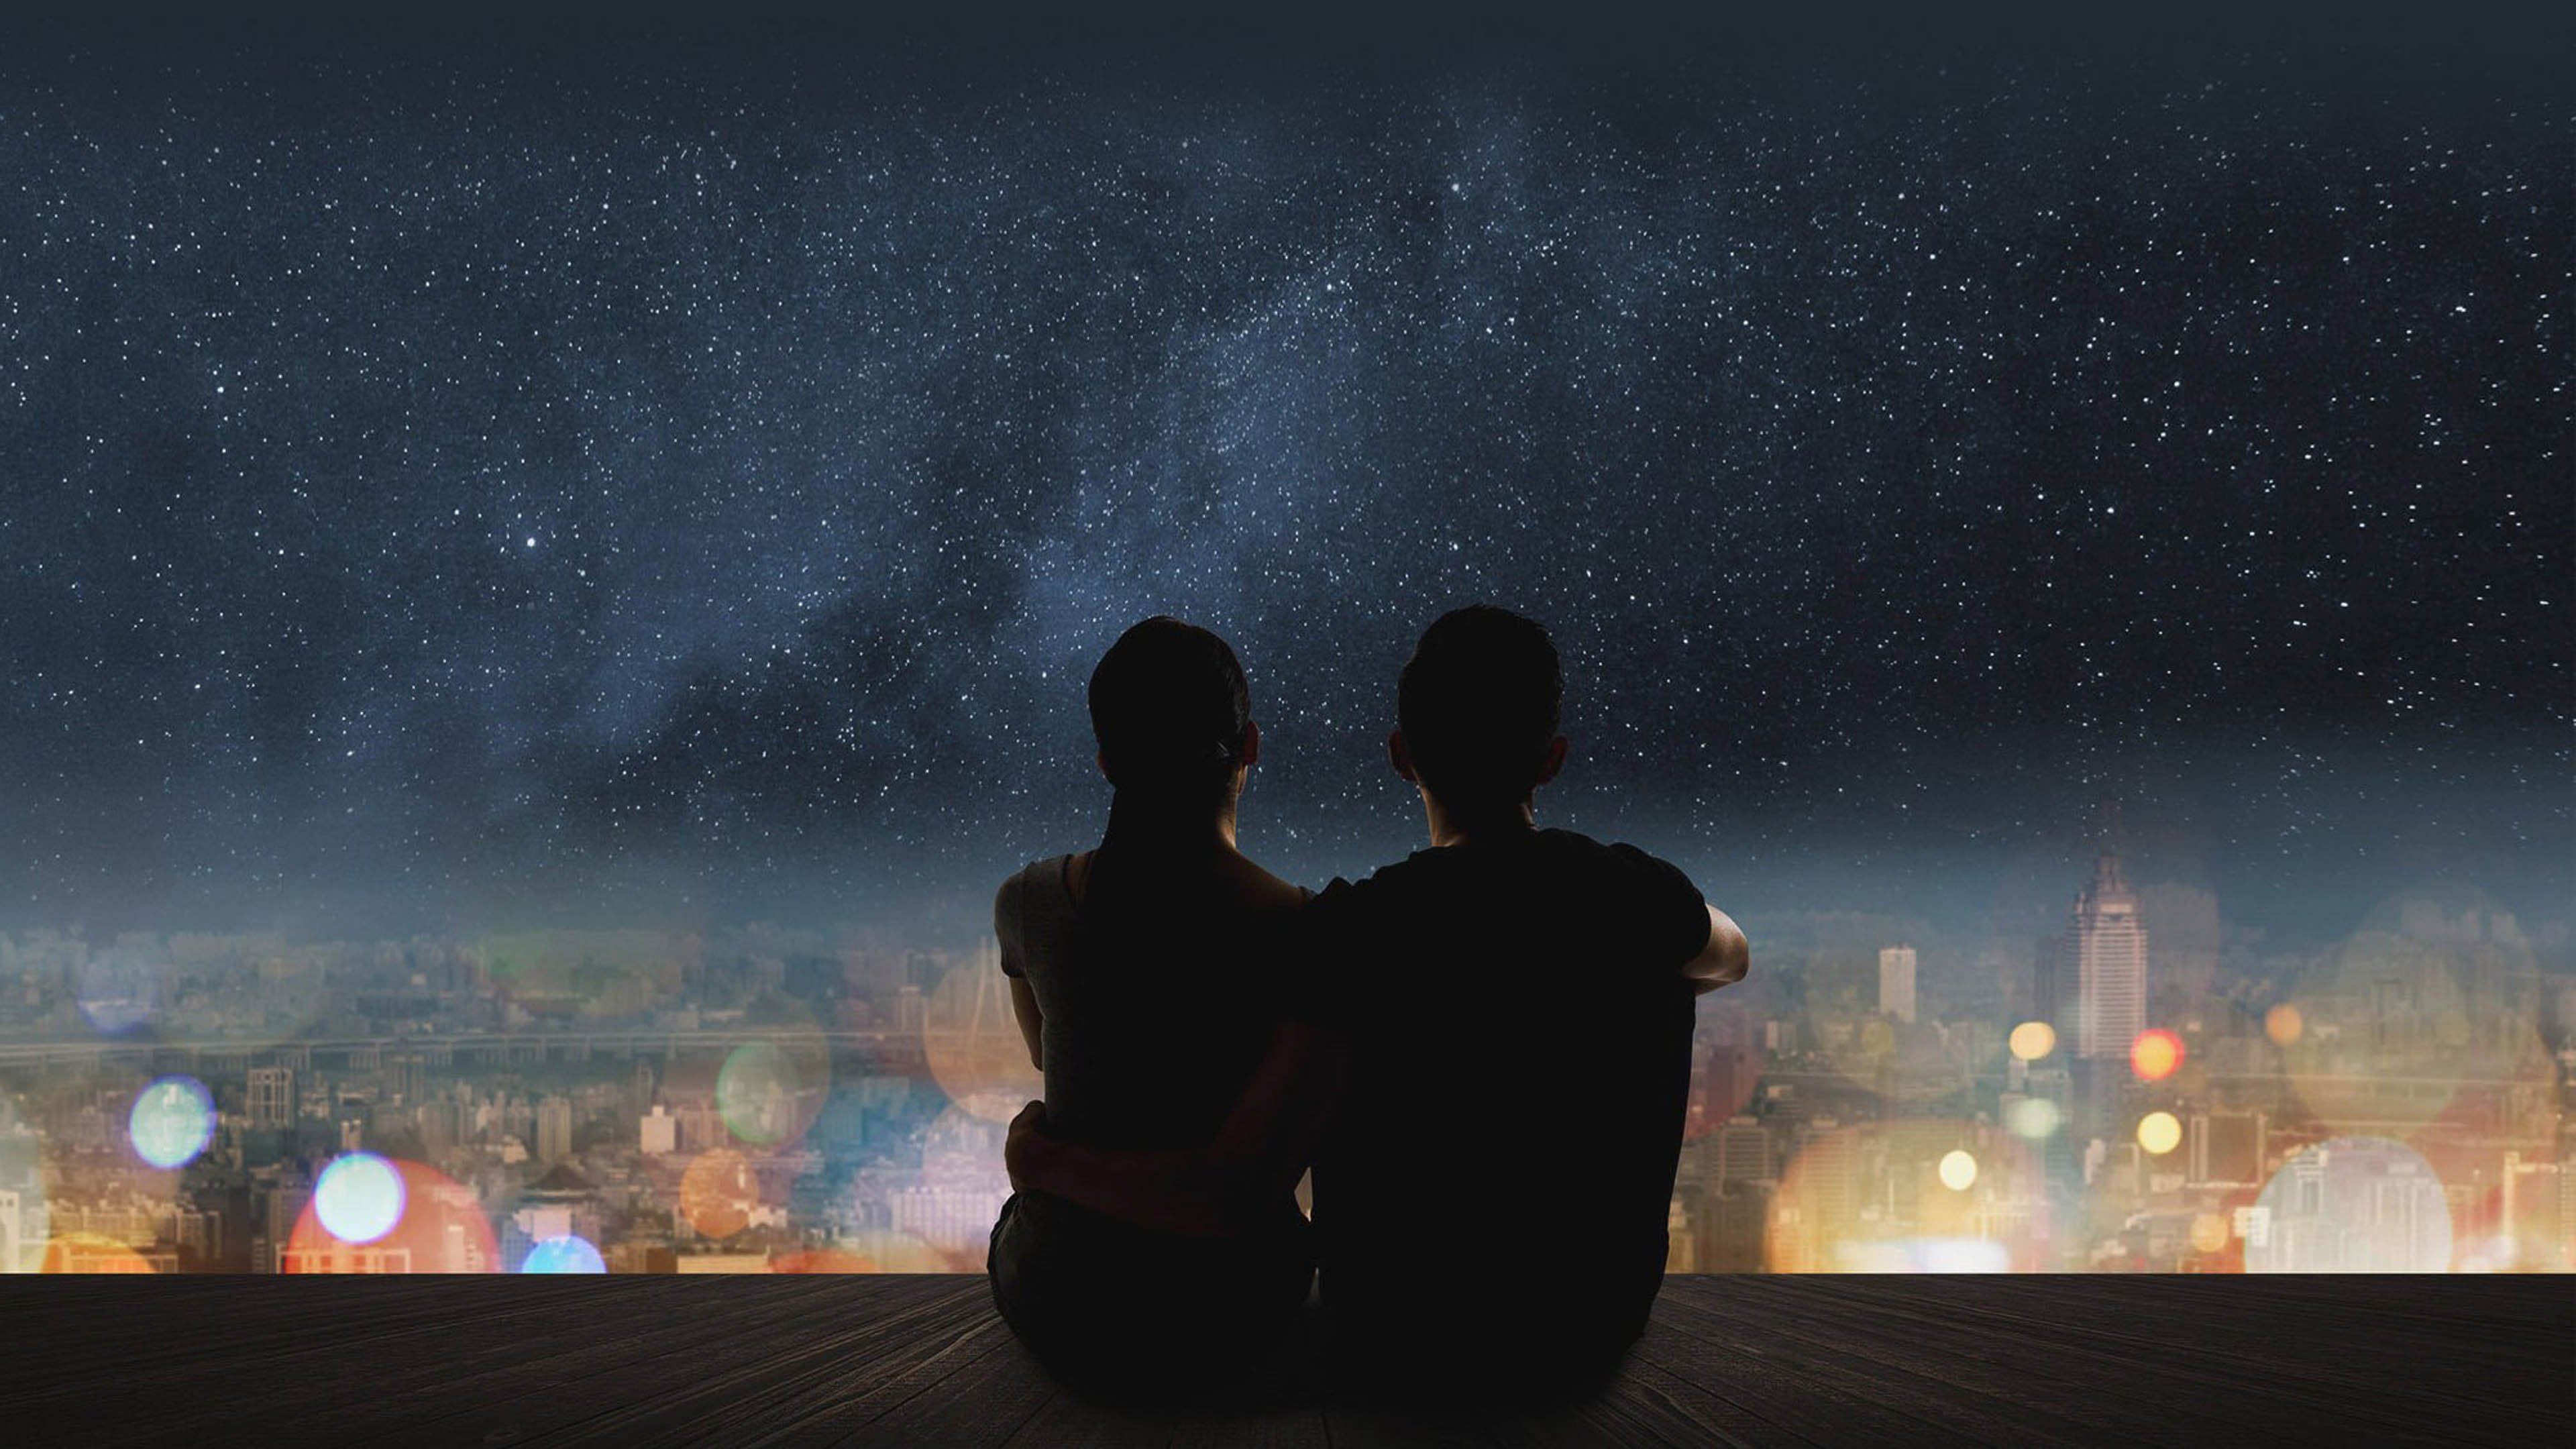 Песня ночь и двое в путь. Пара на фоне ночного неба. Звездное небо и влюбленные. Пара на фоне ночи. Пара на фоне звездного неба.